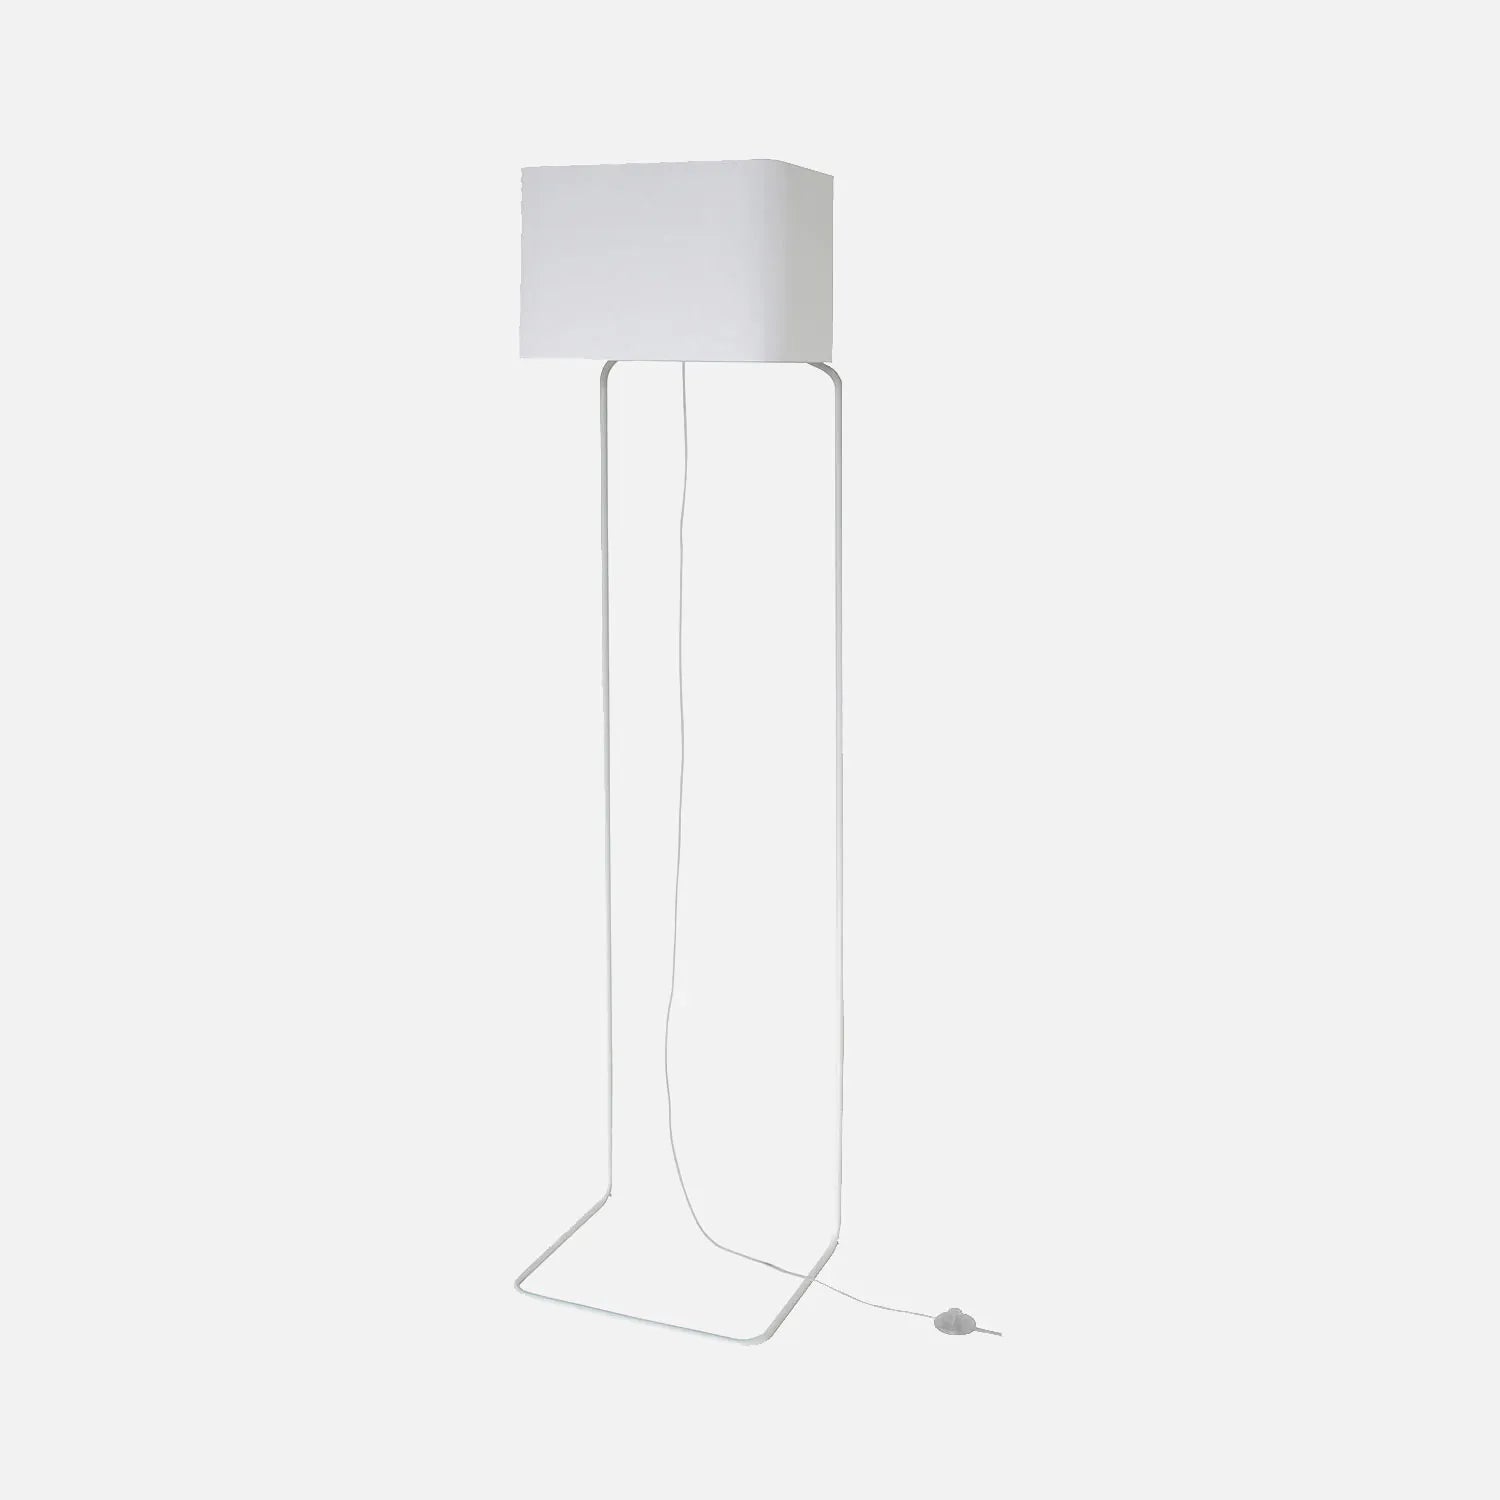 Design vloerlamp wit - frauMaier ThinLissie